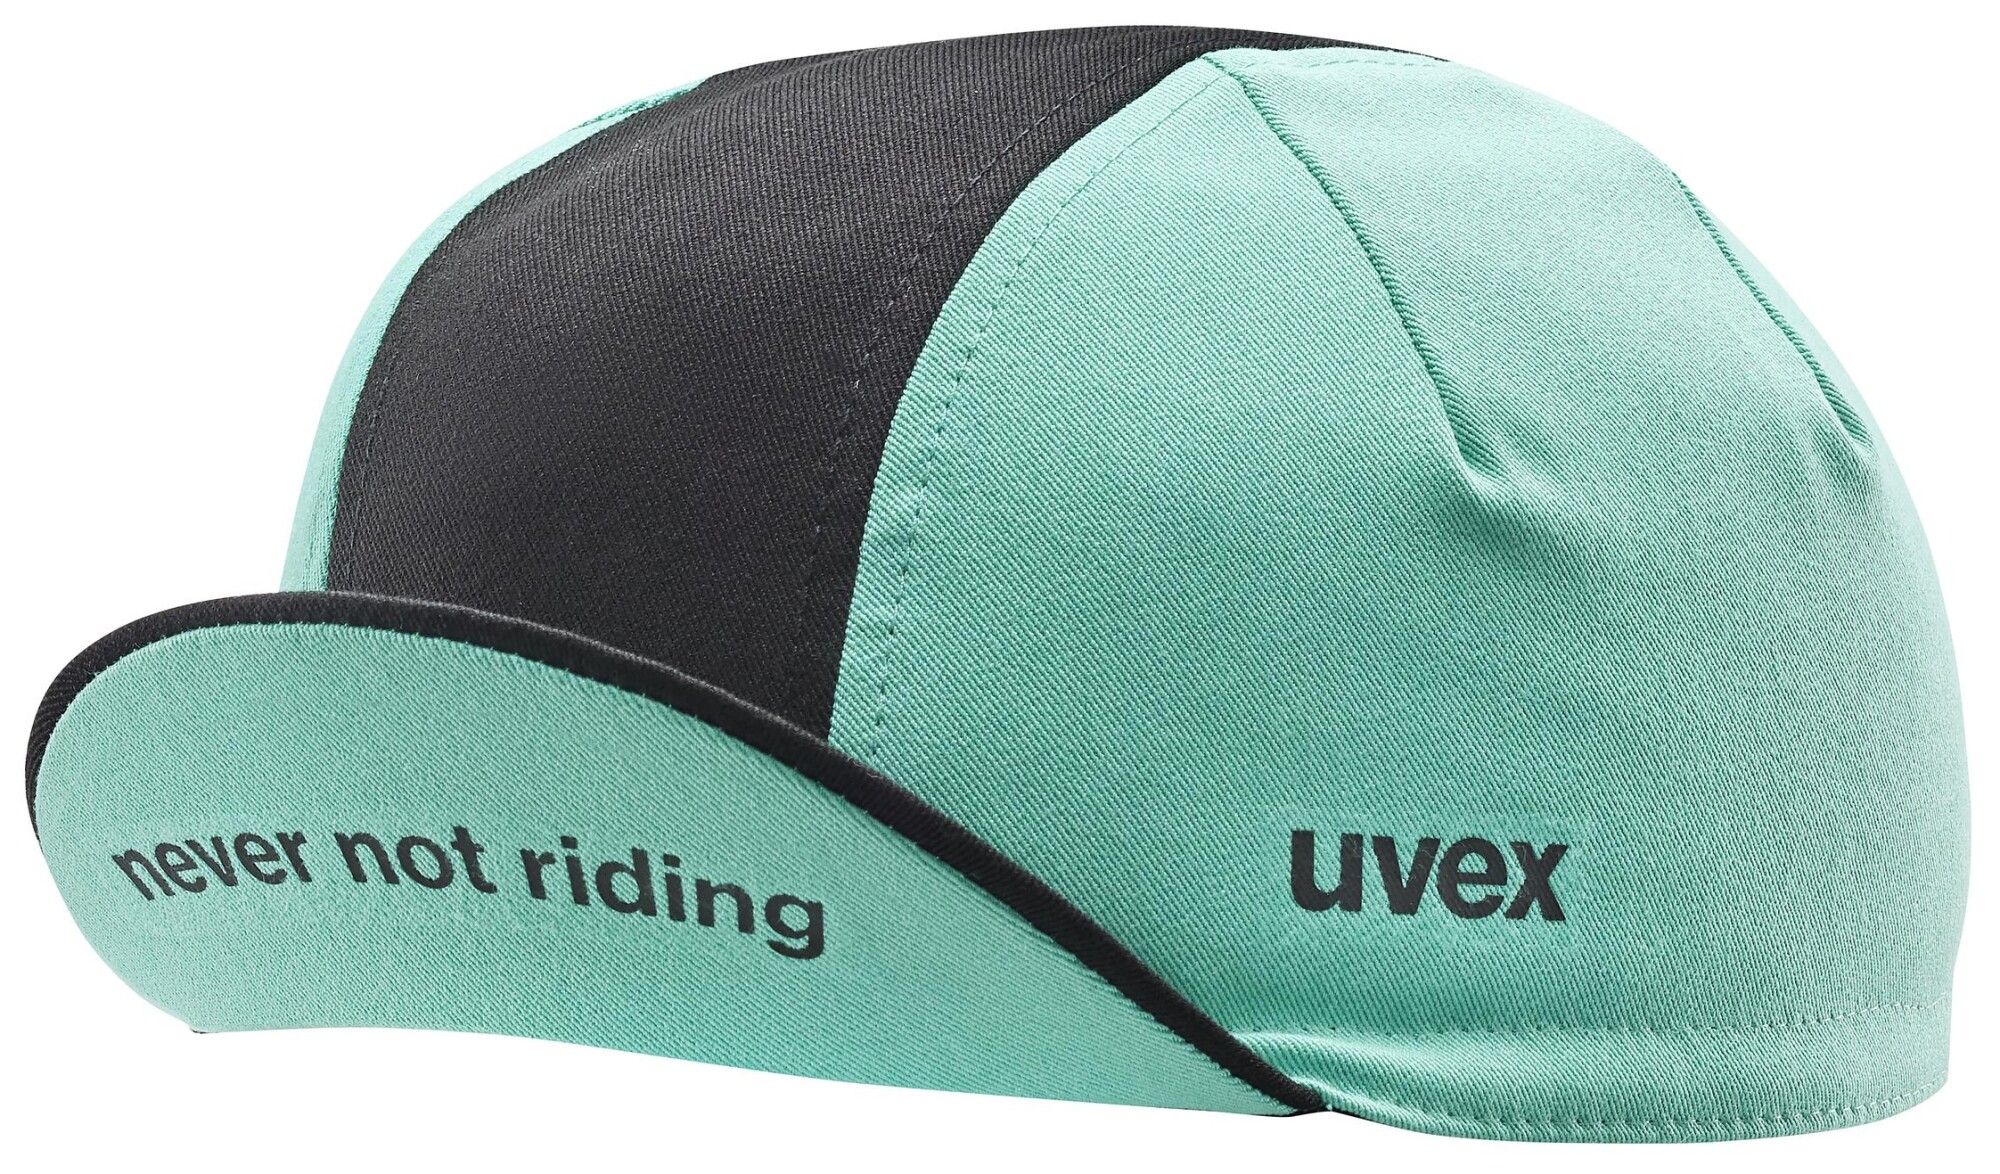 Uvex uvex cycling cap (Bild 1)